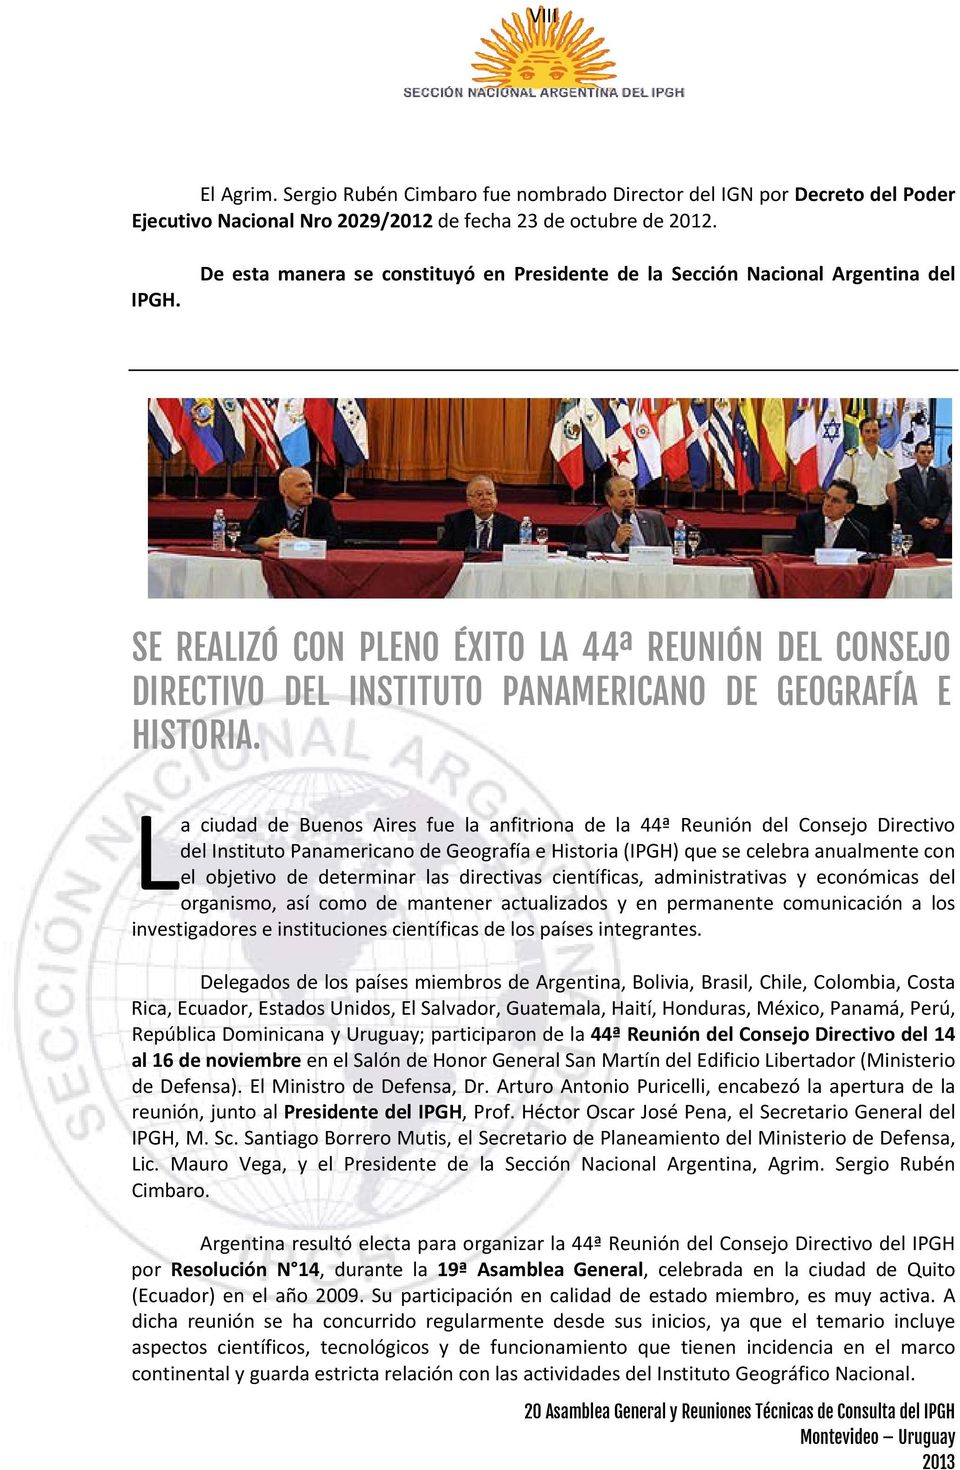 La ciudad de Buenos Aires fue la anfitriona de la 44ª Reunión del Consejo Directivo del Instituto Panamericano de Geografía e Historia (IPGH) que se celebra anualmente con el objetivo de determinar